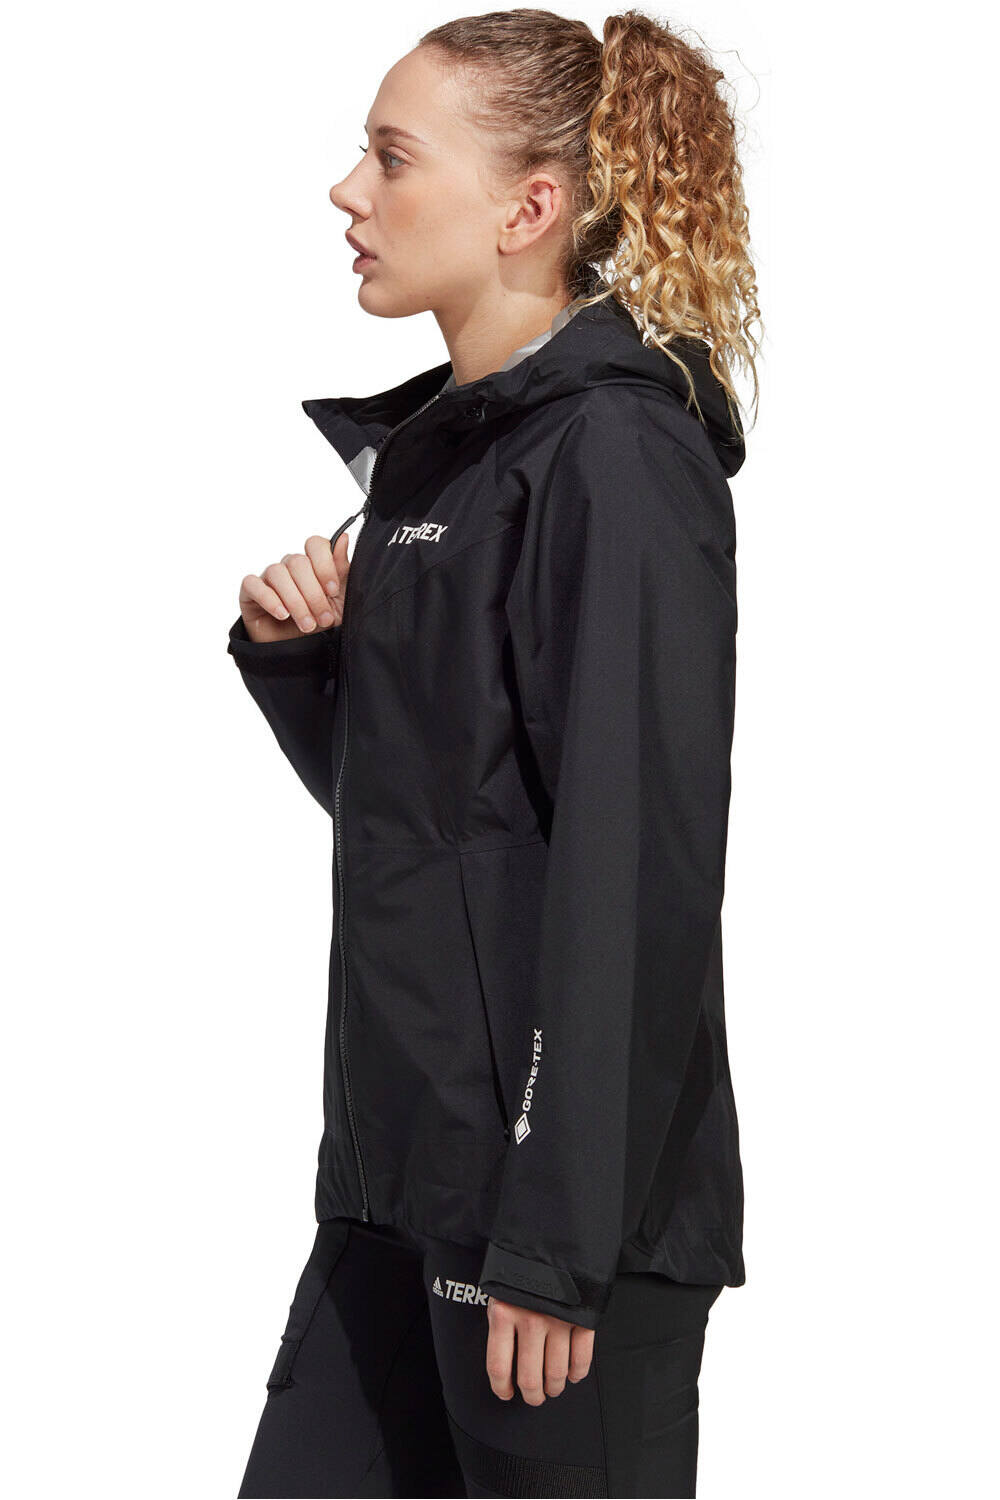 adidas chaqueta impermeable mujer Terrex Xperior GORE-TEX Paclite Rain vista detalle